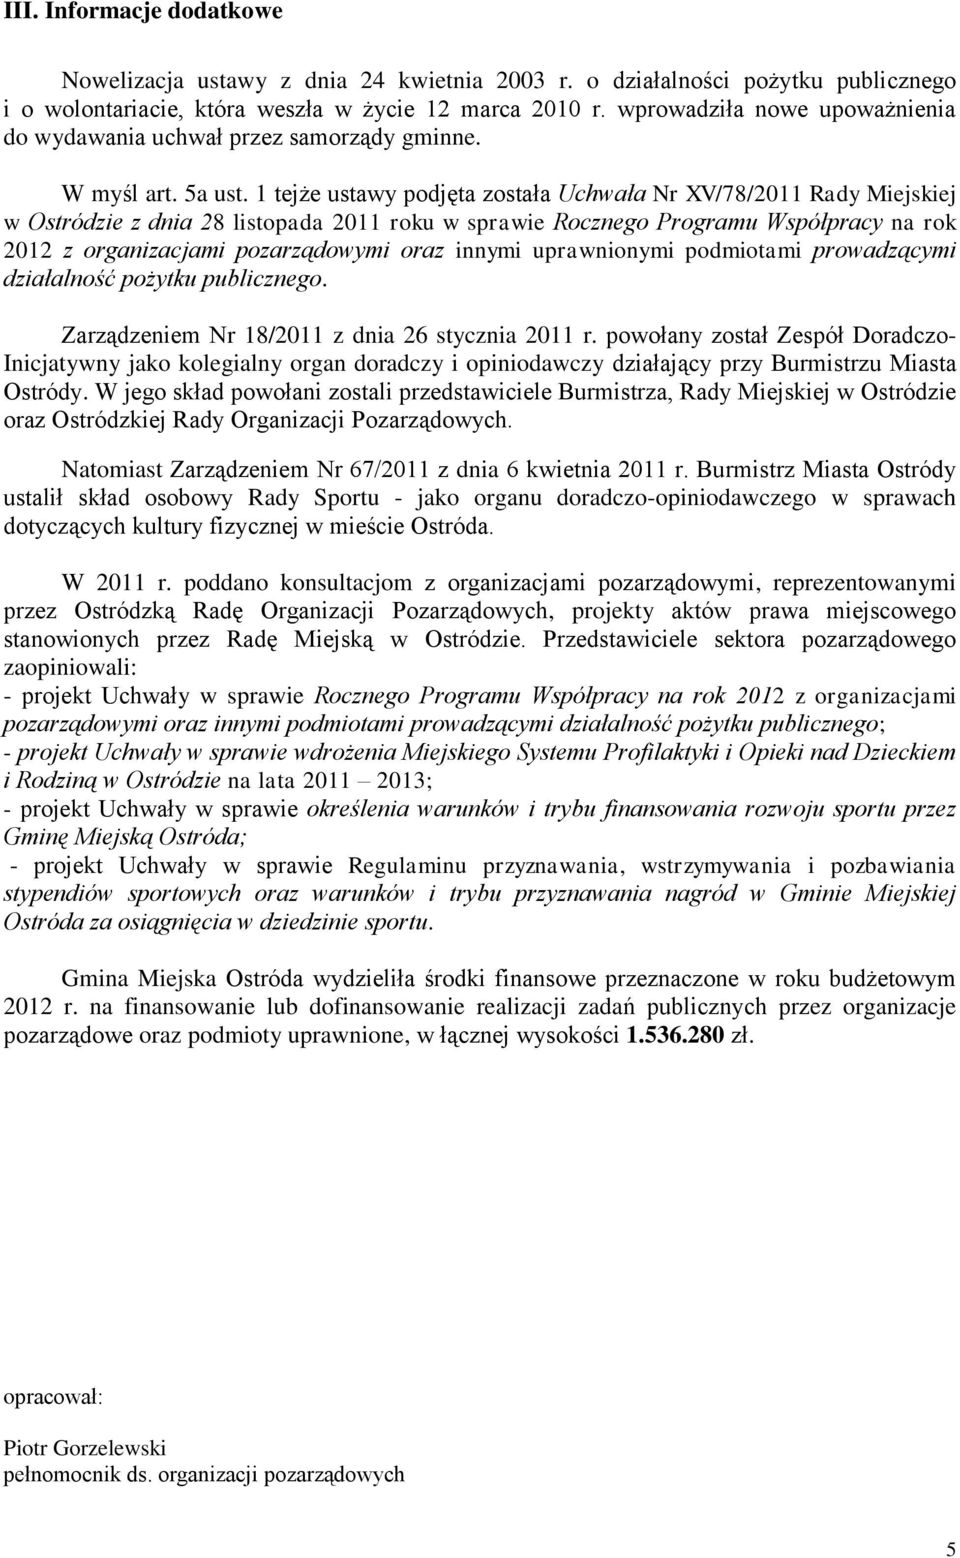 1 tejże ustawy podjęta została Uchwała Nr XV/78/2011 Rady Miejskiej w Ostródzie z dnia 28 listopada 2011 roku w sprawie Rocznego Programu Współpracy na rok 2012 z organizacjami pozarządowymi oraz